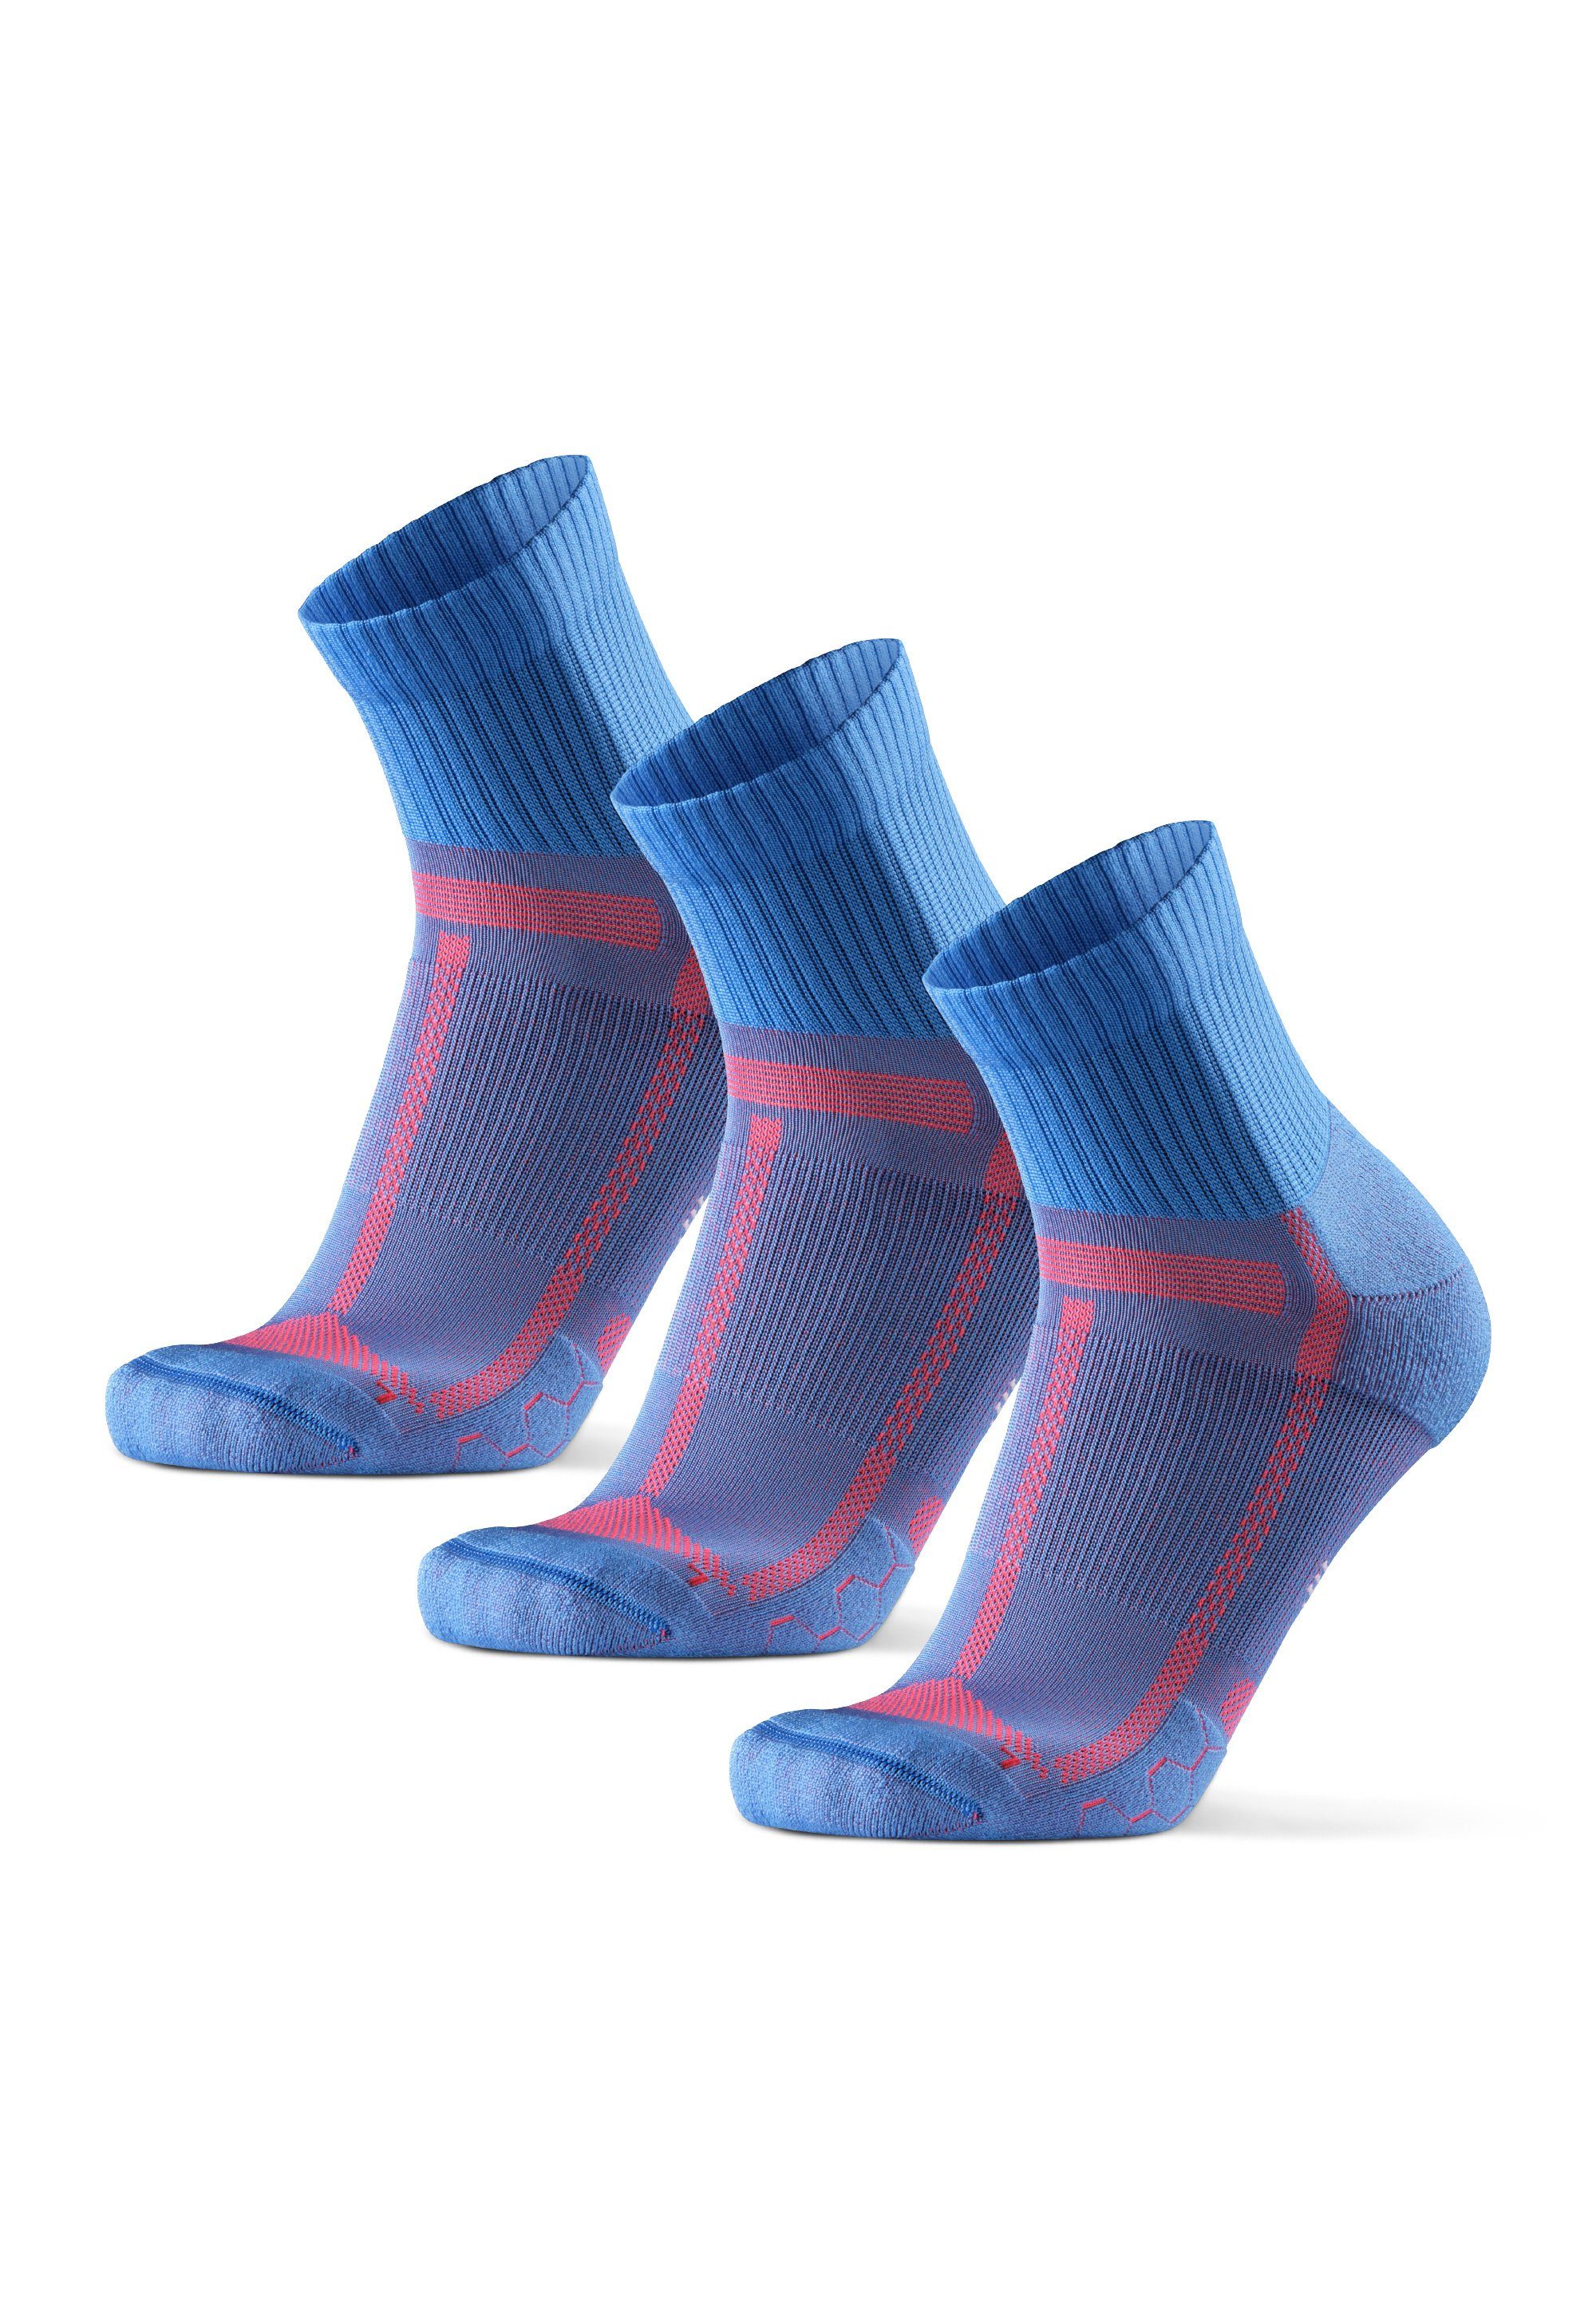 Socks light Distance 3-Paar) ENDURANCE Anti-Blasen, blue/orange DANISH Long Laufsocken (Packung, Running Technisch